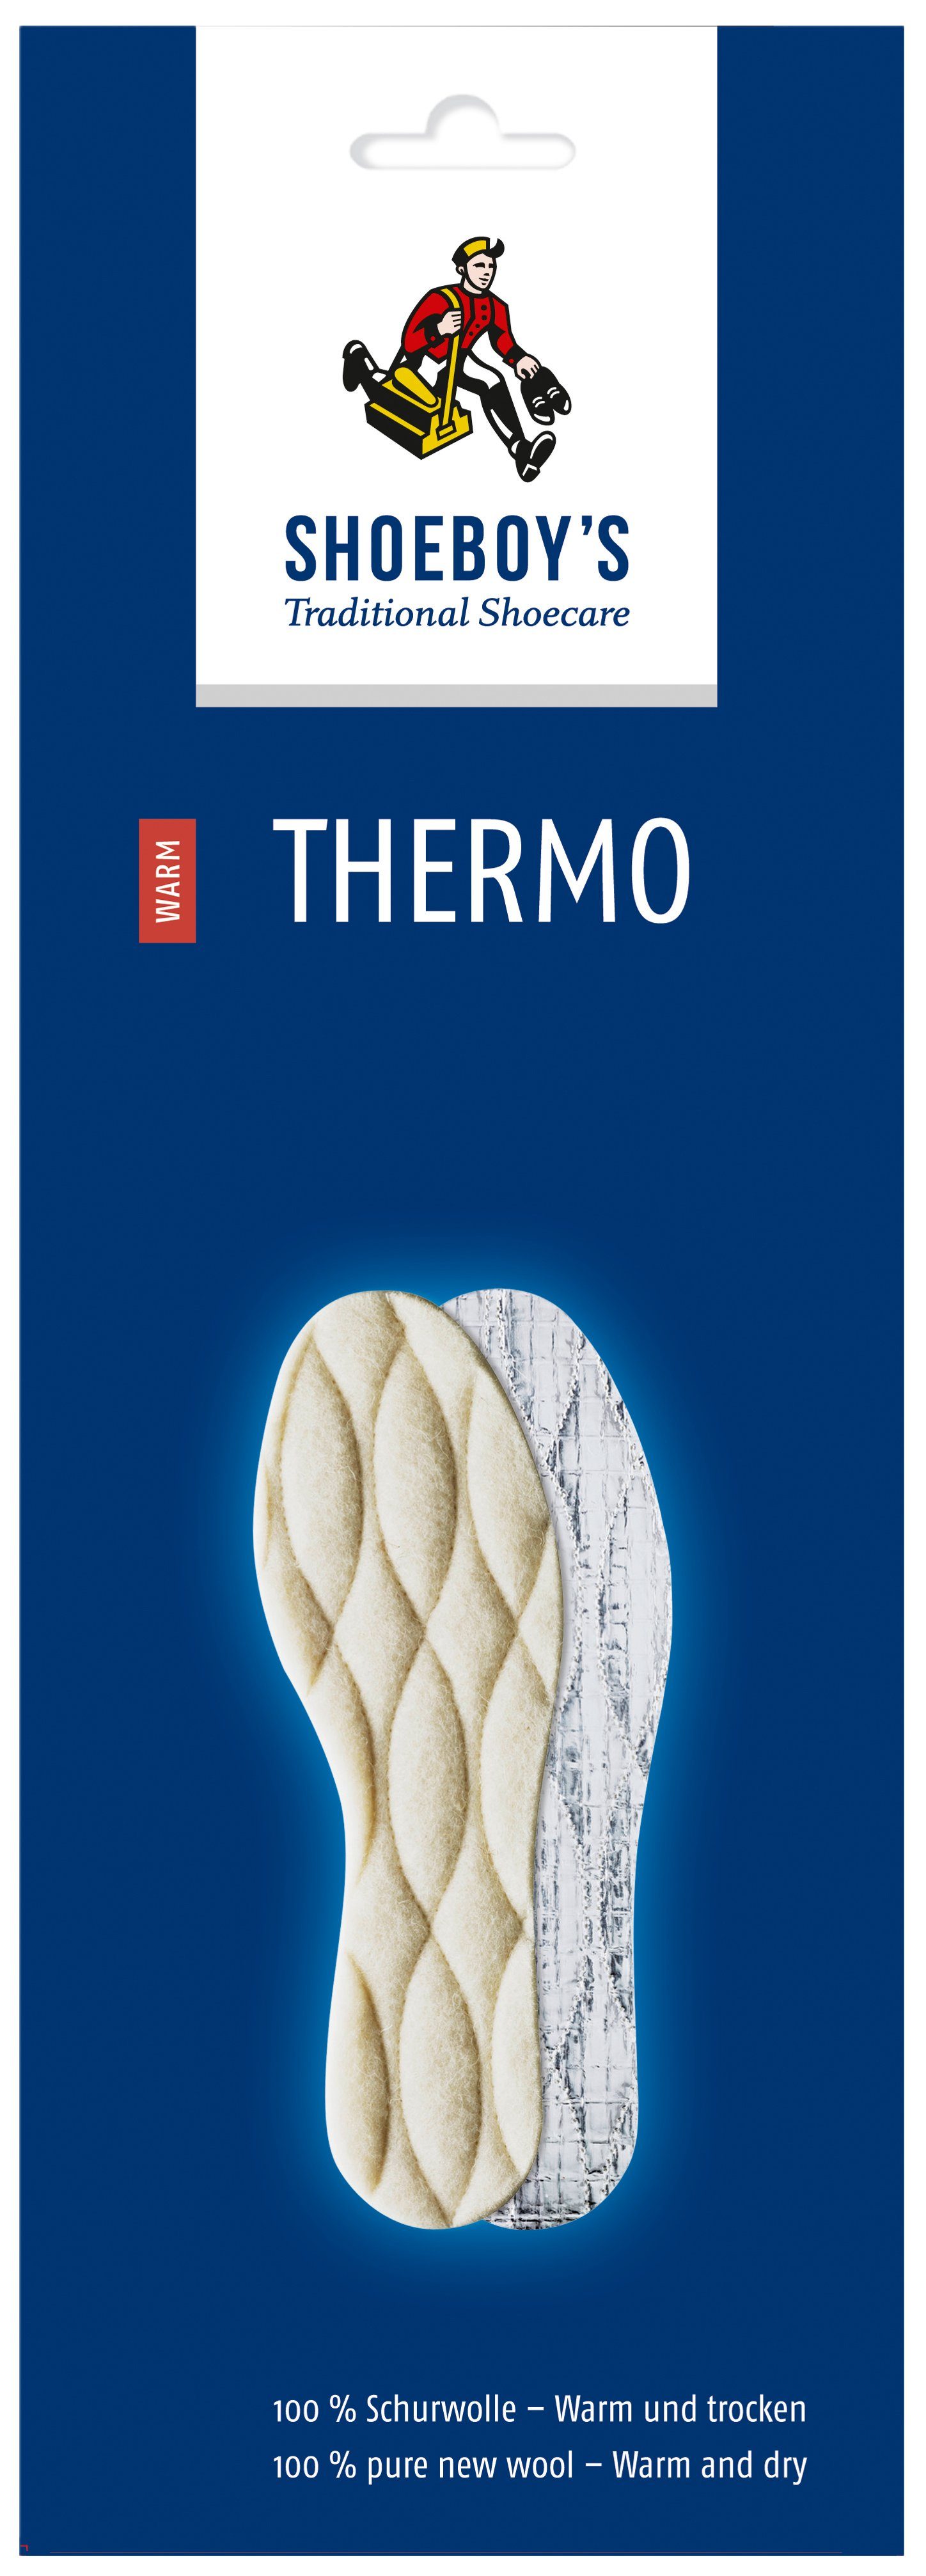 Shoeboys Thermosohlen Thermo - 100 % Schurwolle – warm und trocken